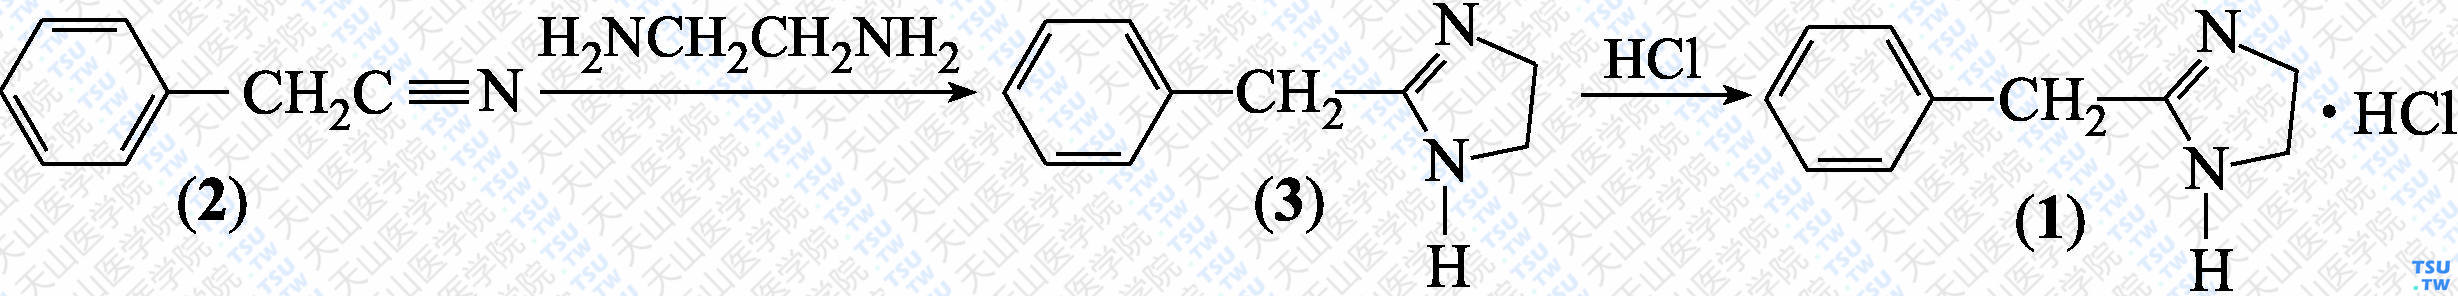 妥拉唑啉（分子式：C<sub>10</sub>H<sub>12</sub>N<sub>2</sub>·HCl）的合成方法路线及其结构式